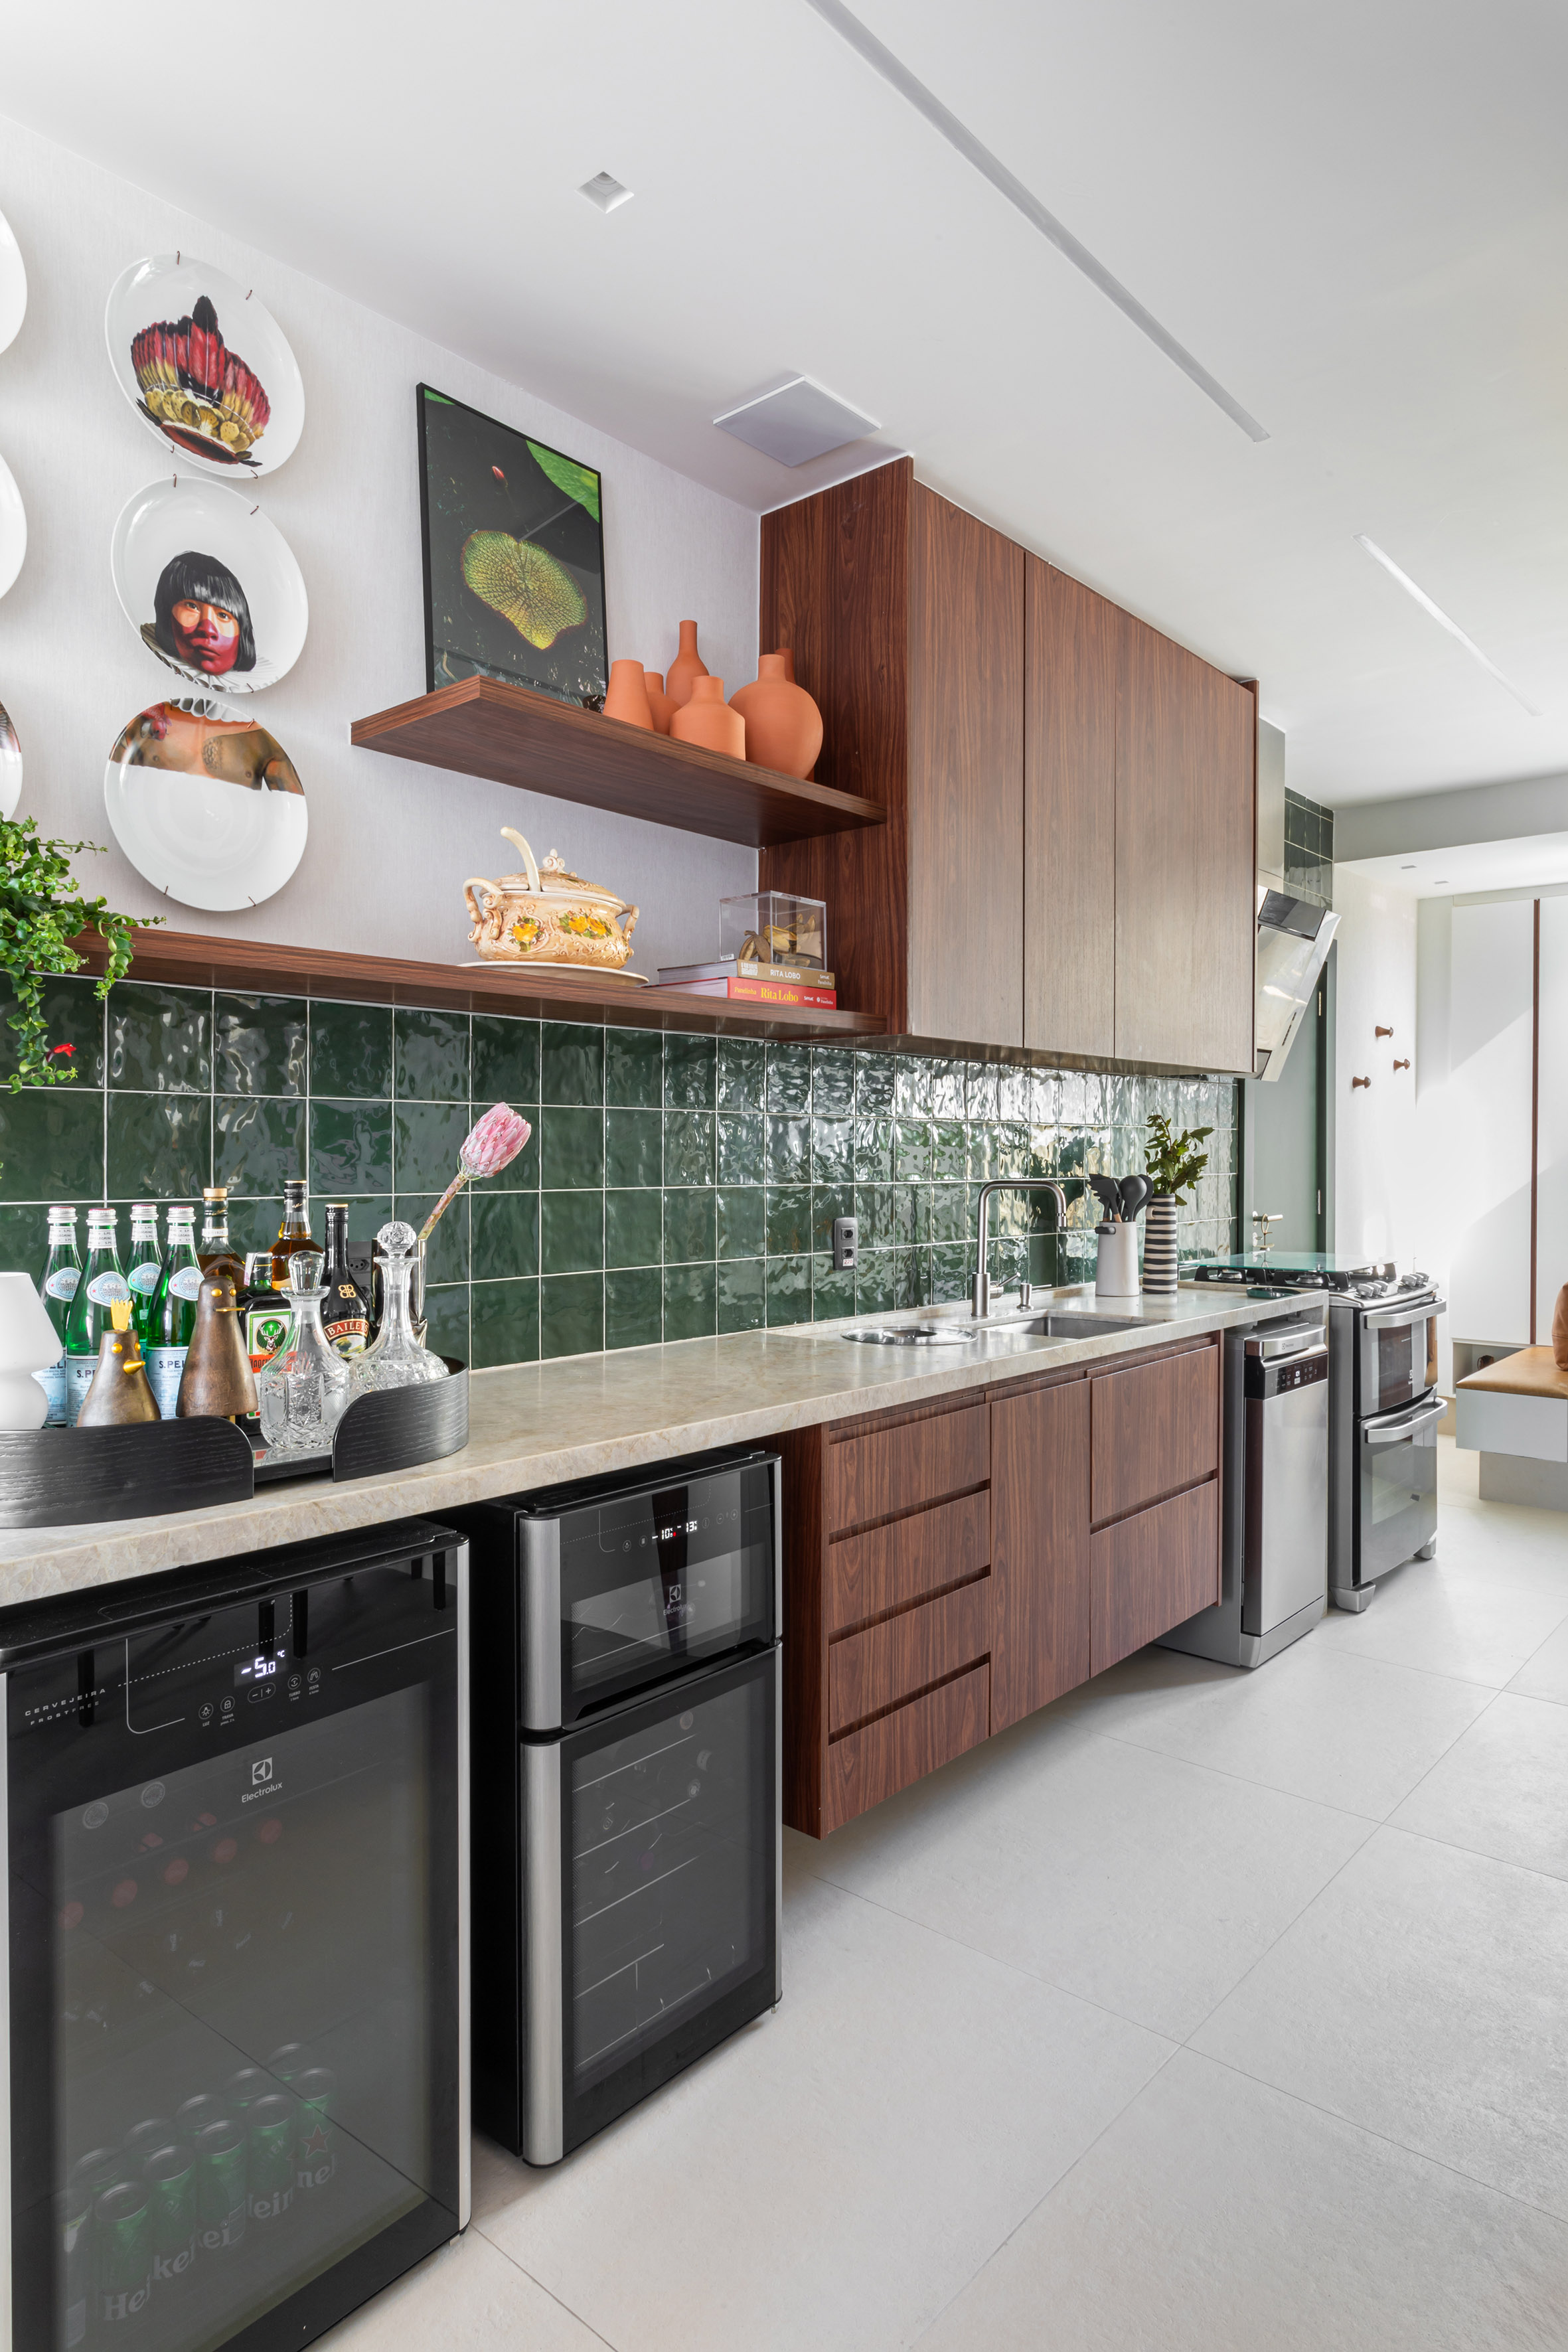 Peças afetivas com memória, design e madeira escura compõem apê de 116 m². Projeto de NOP Arquitetura. Na foto, cozinha com azulejos verdes, pratos na parede e prateleira com planta.